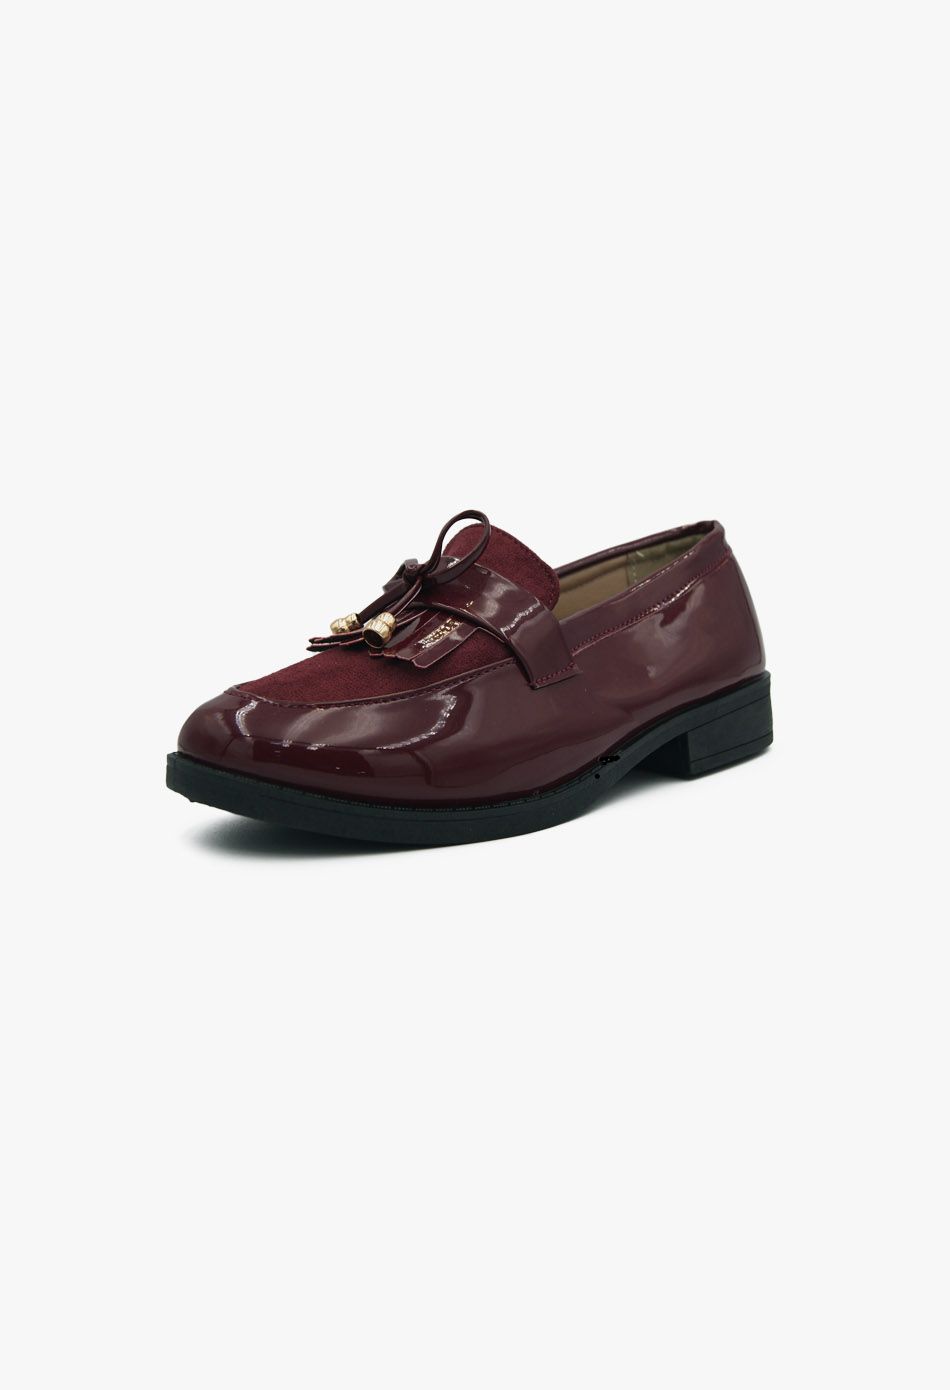 Γυναικεία Loafers σε Μπορντό Χρώμα Λουστρίνι / XY-607-burgundy Χαμηλά Παπούτσια joya.gr